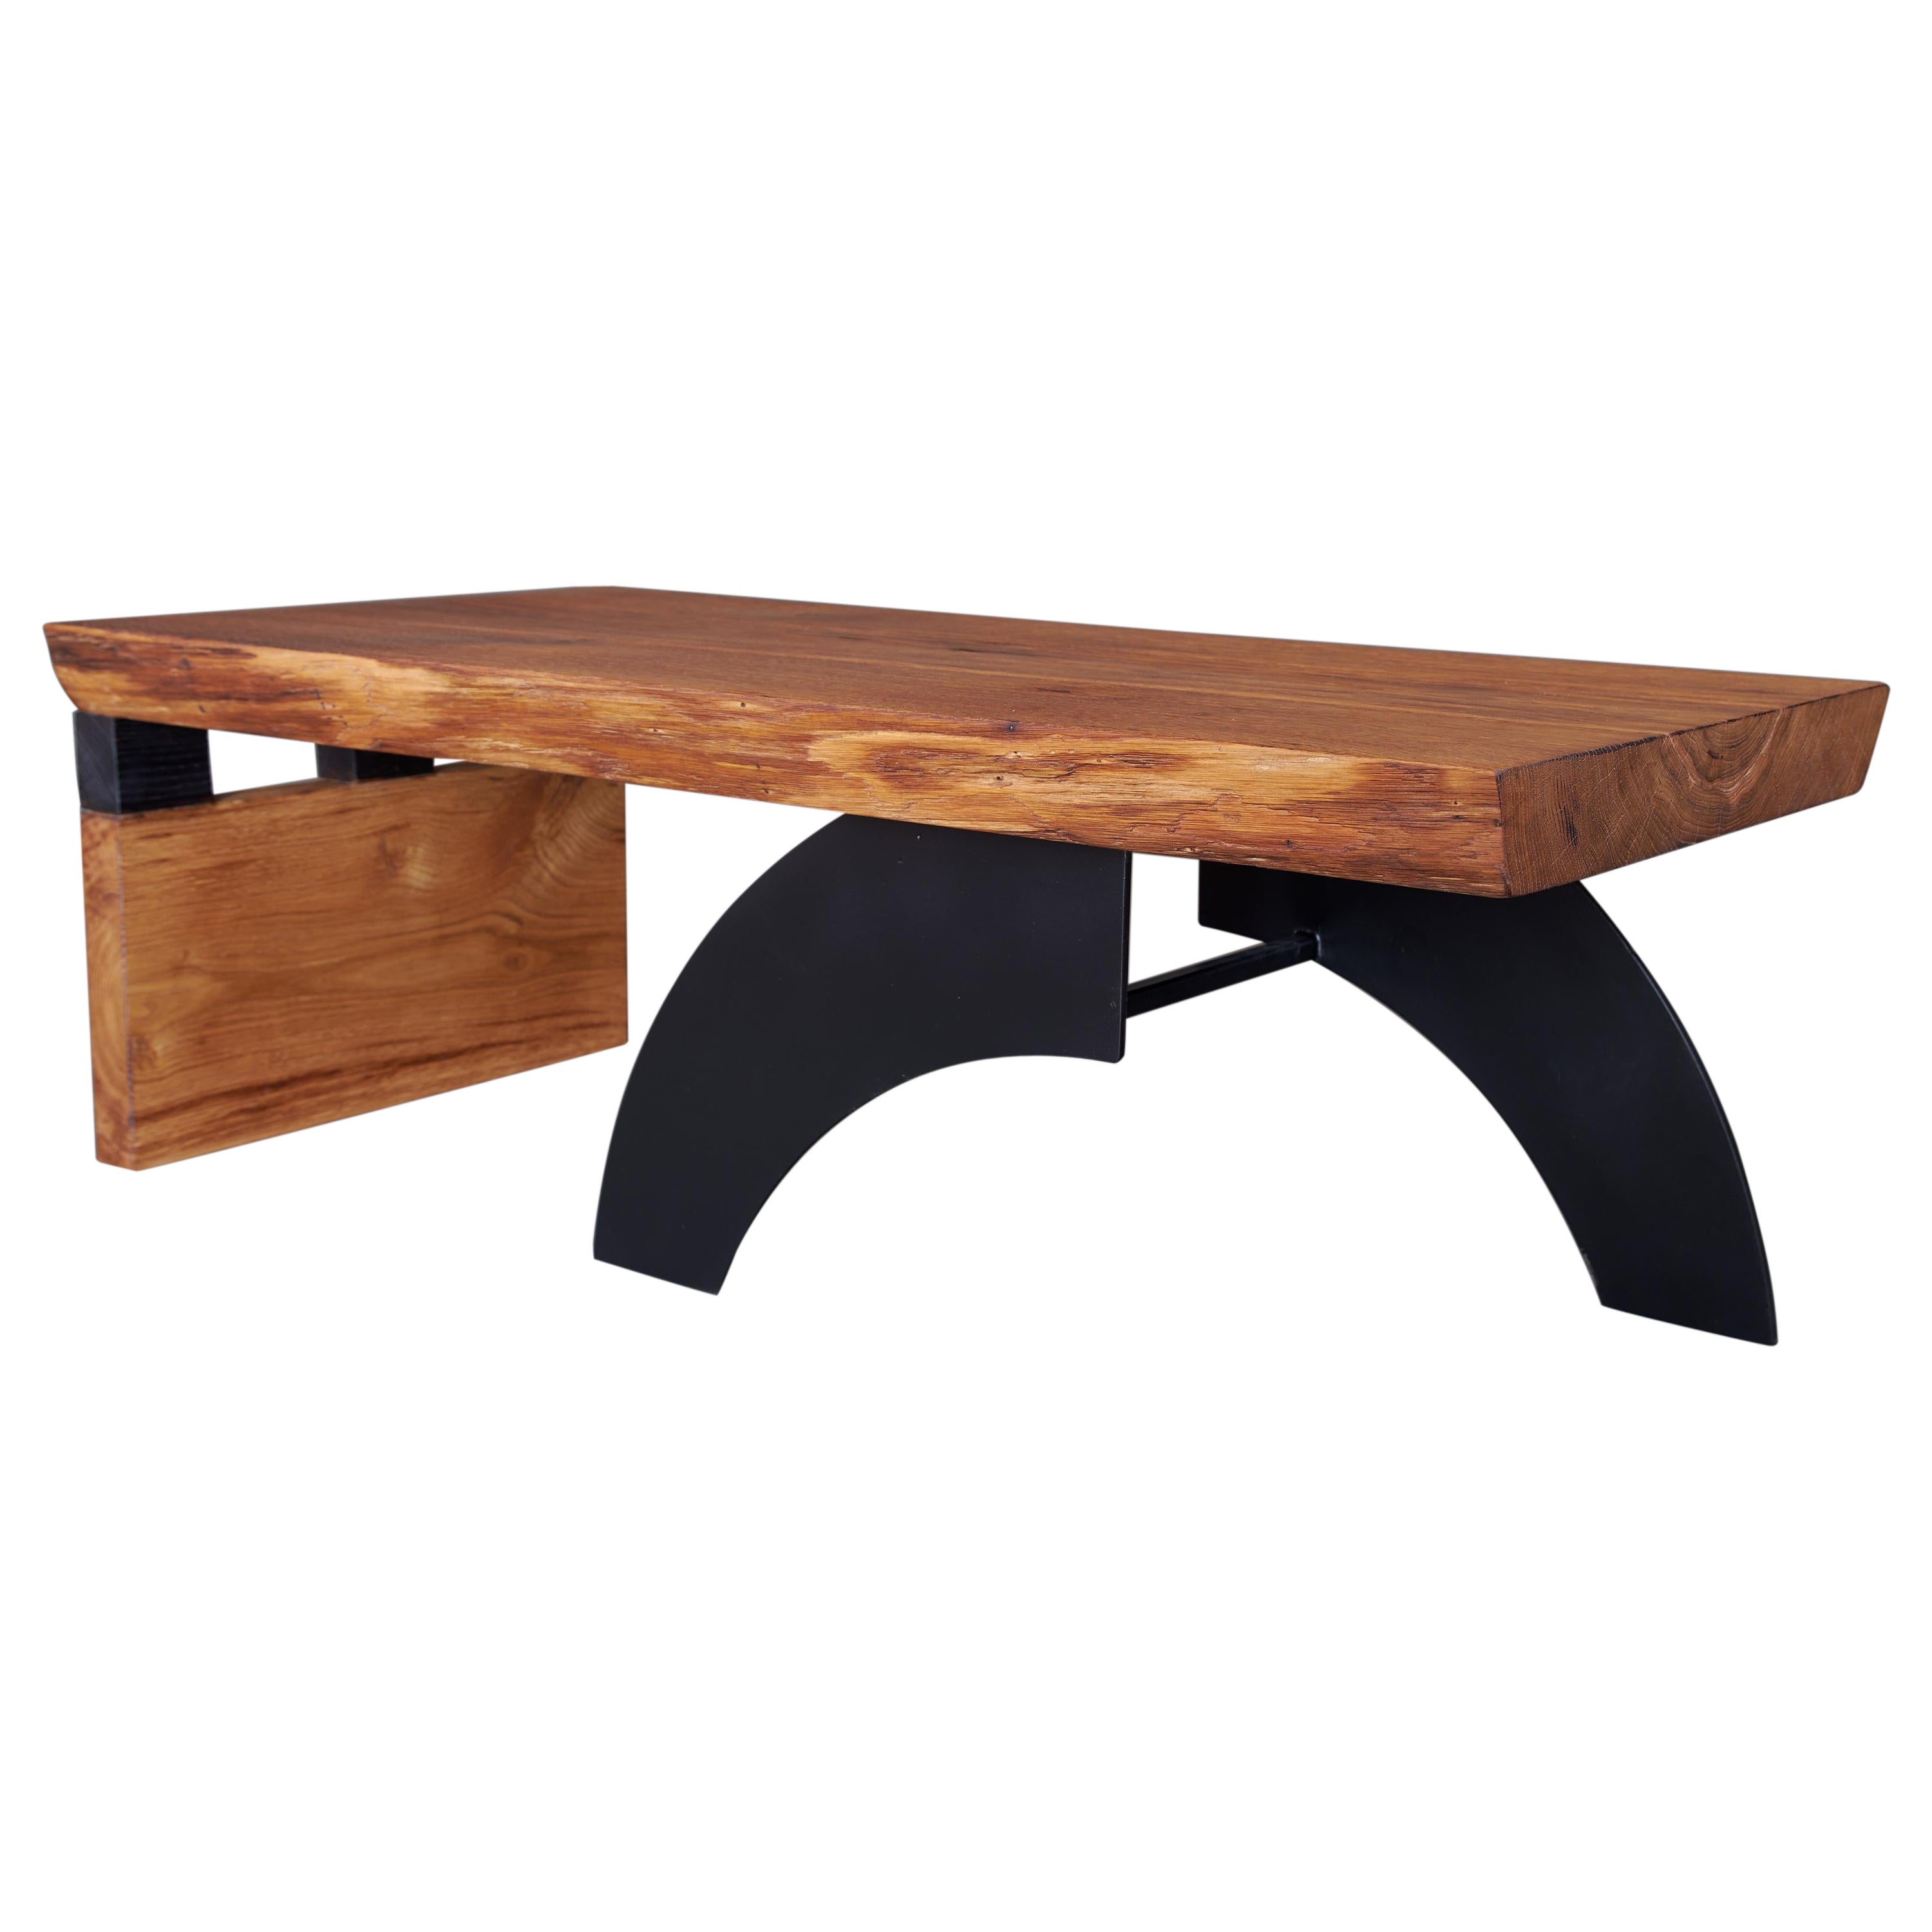 Massive oak Coffee Table, Contemporary Original Design, Logniture